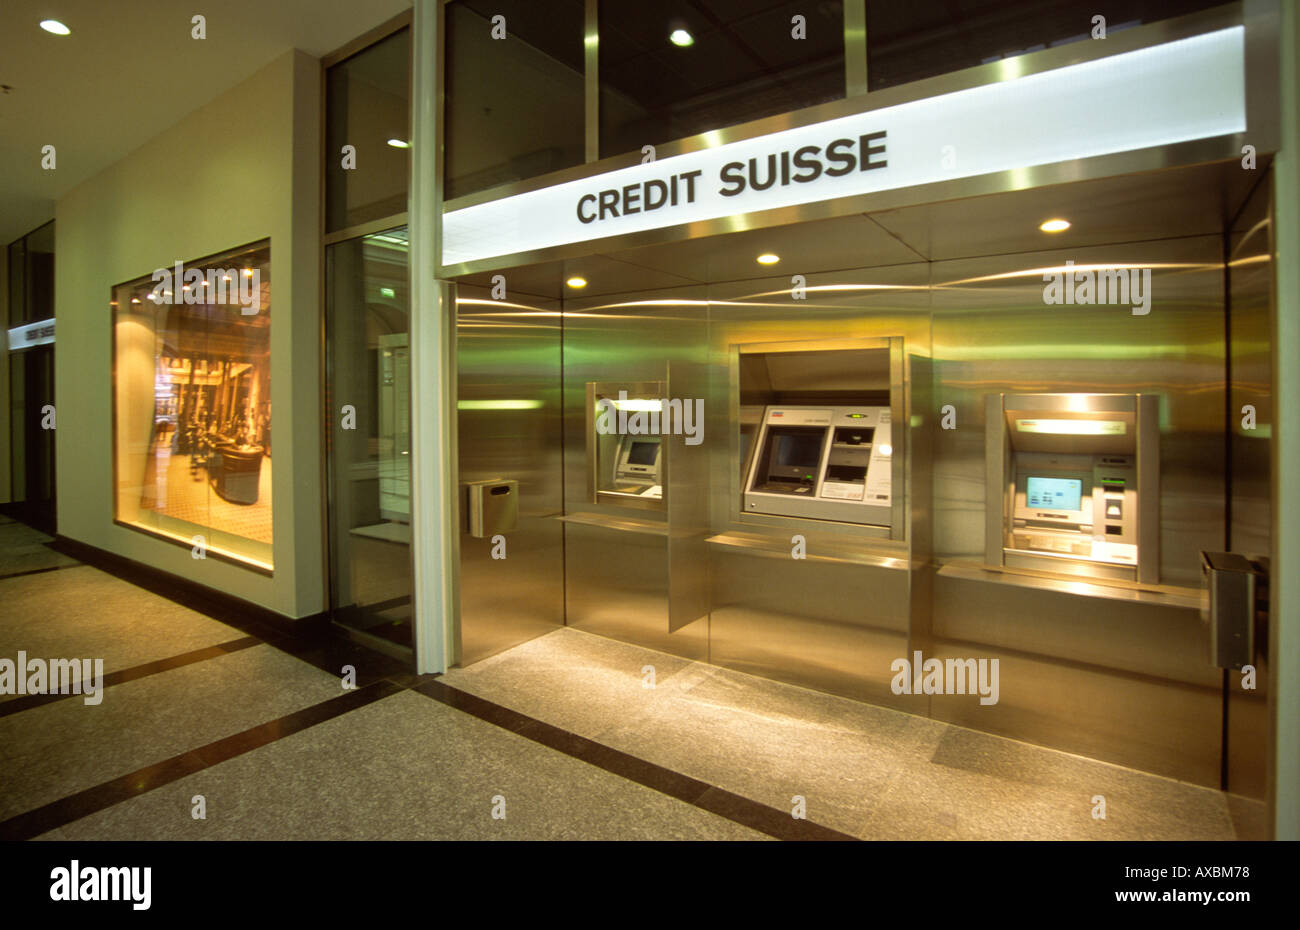 Switzerland Zurich Credit suisse automatic teller machine Paradeplatz indoor Stock Photo